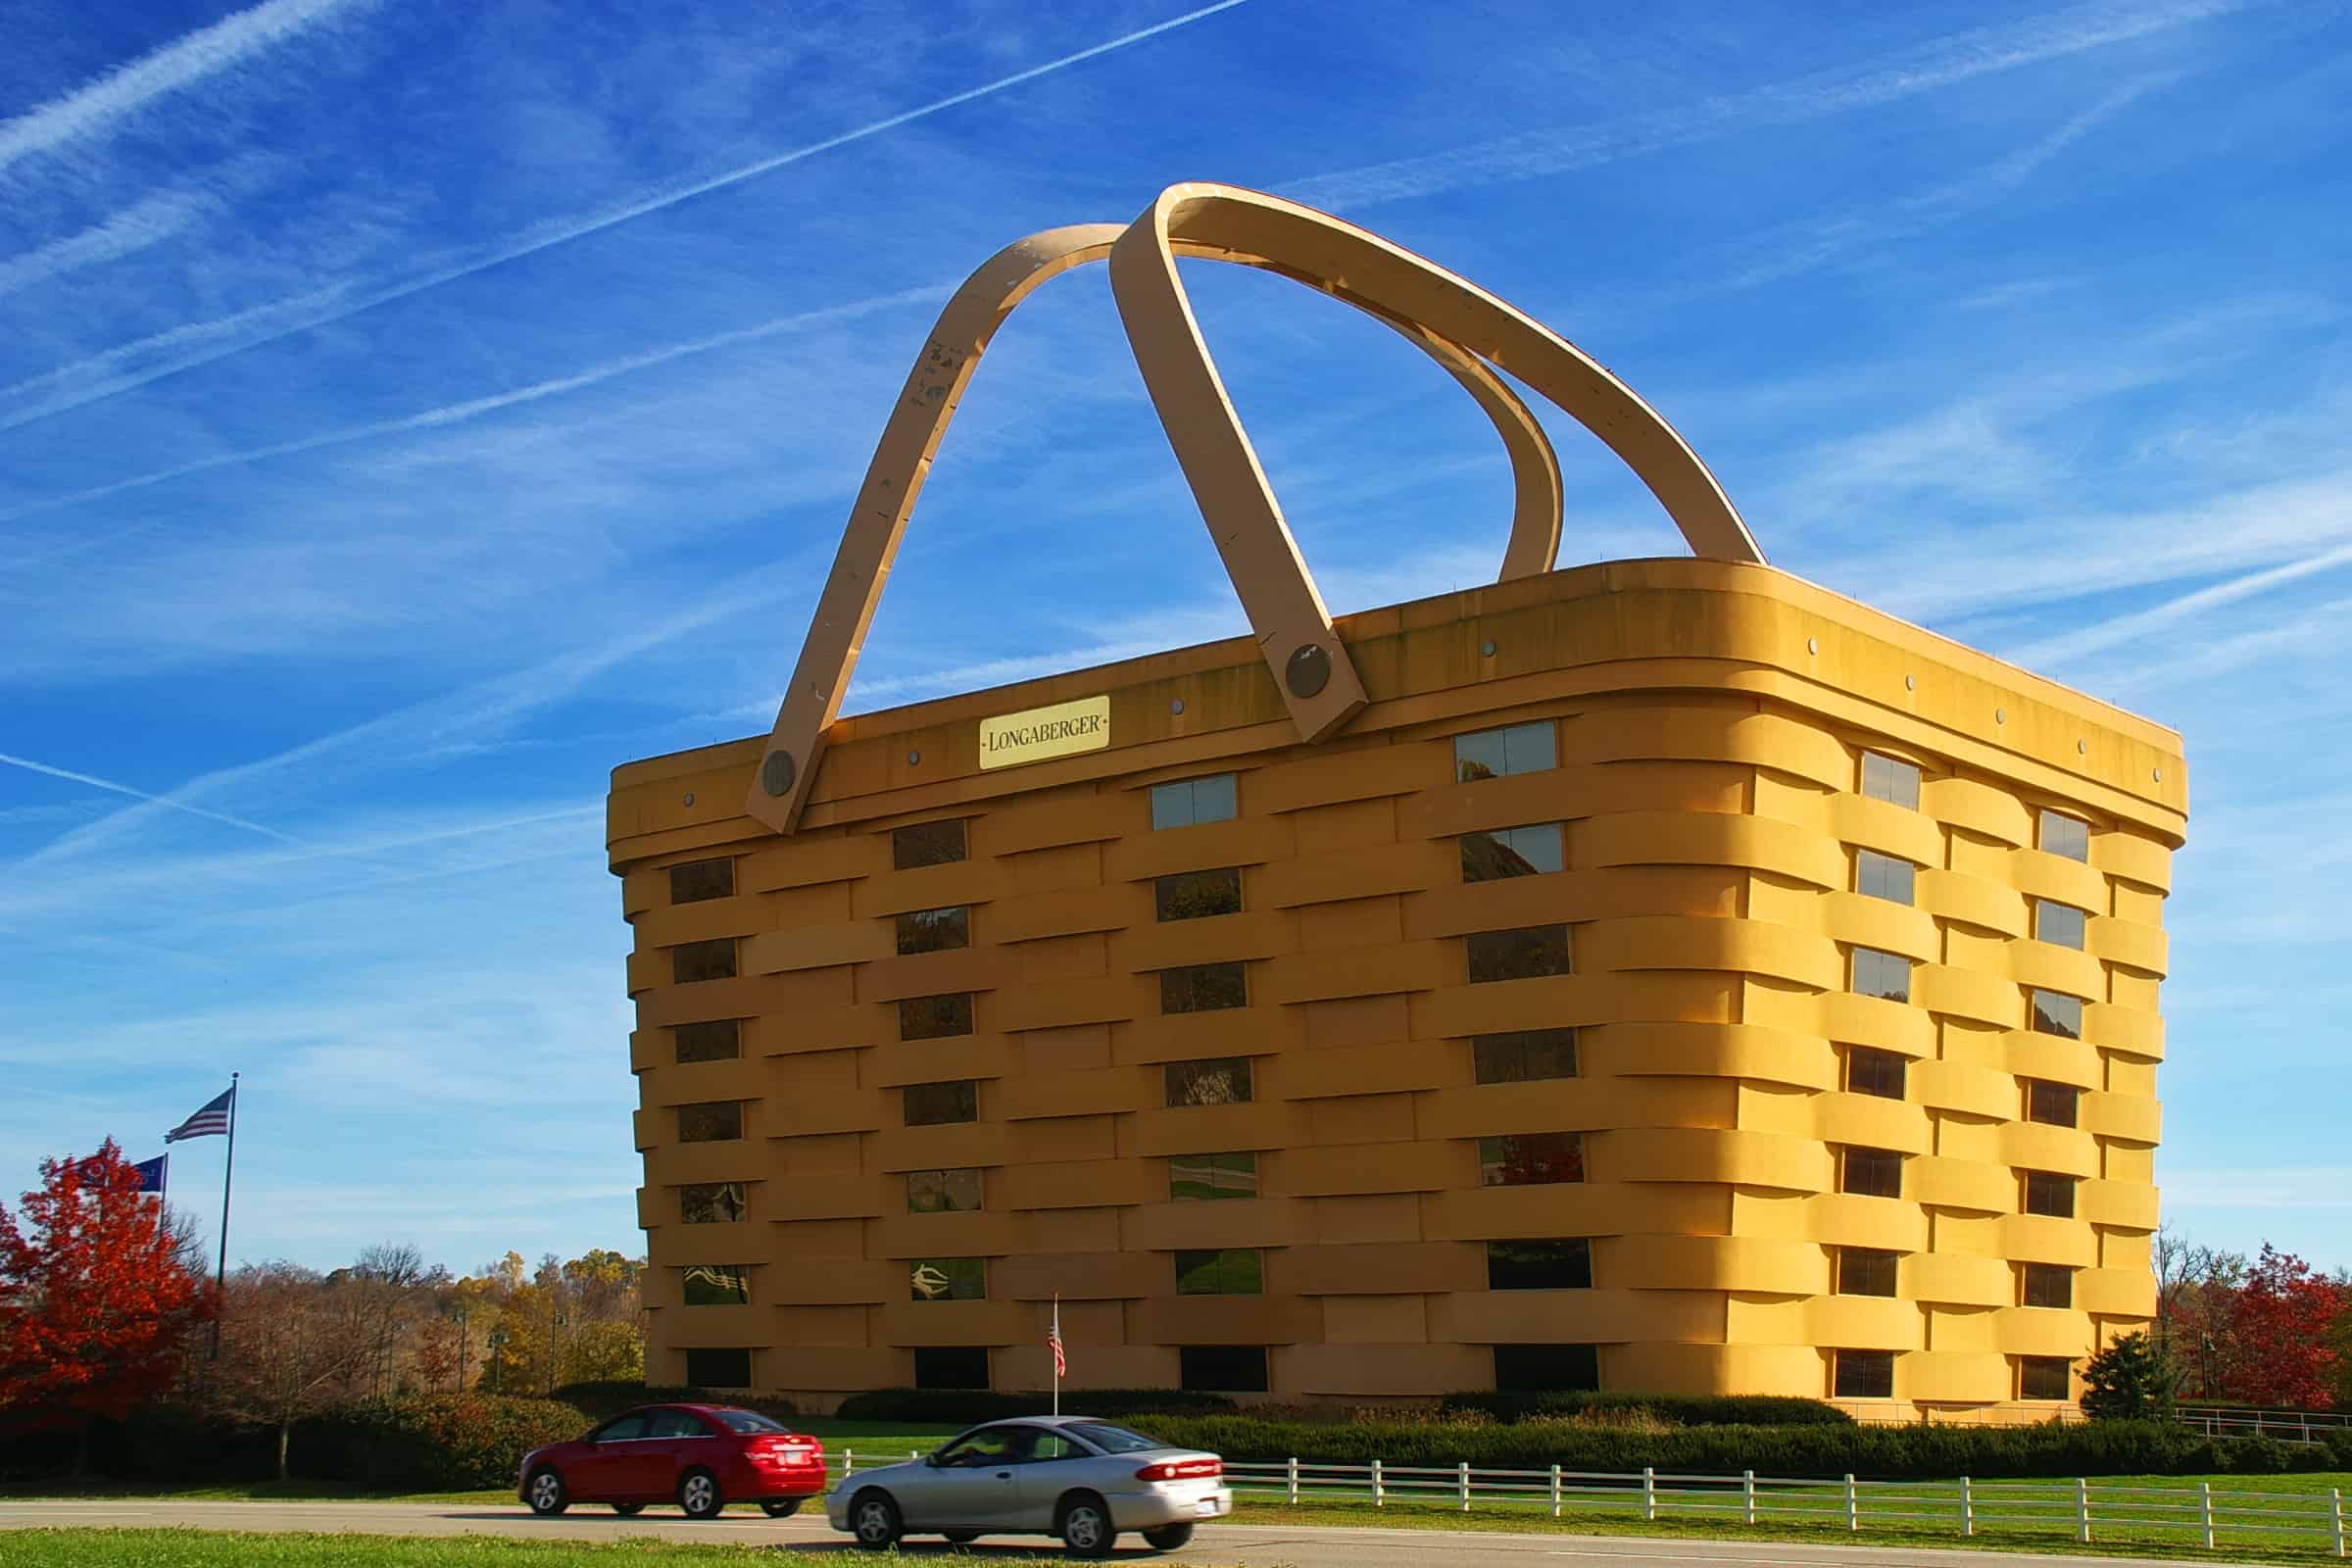 World's largest picnic basket Ohio